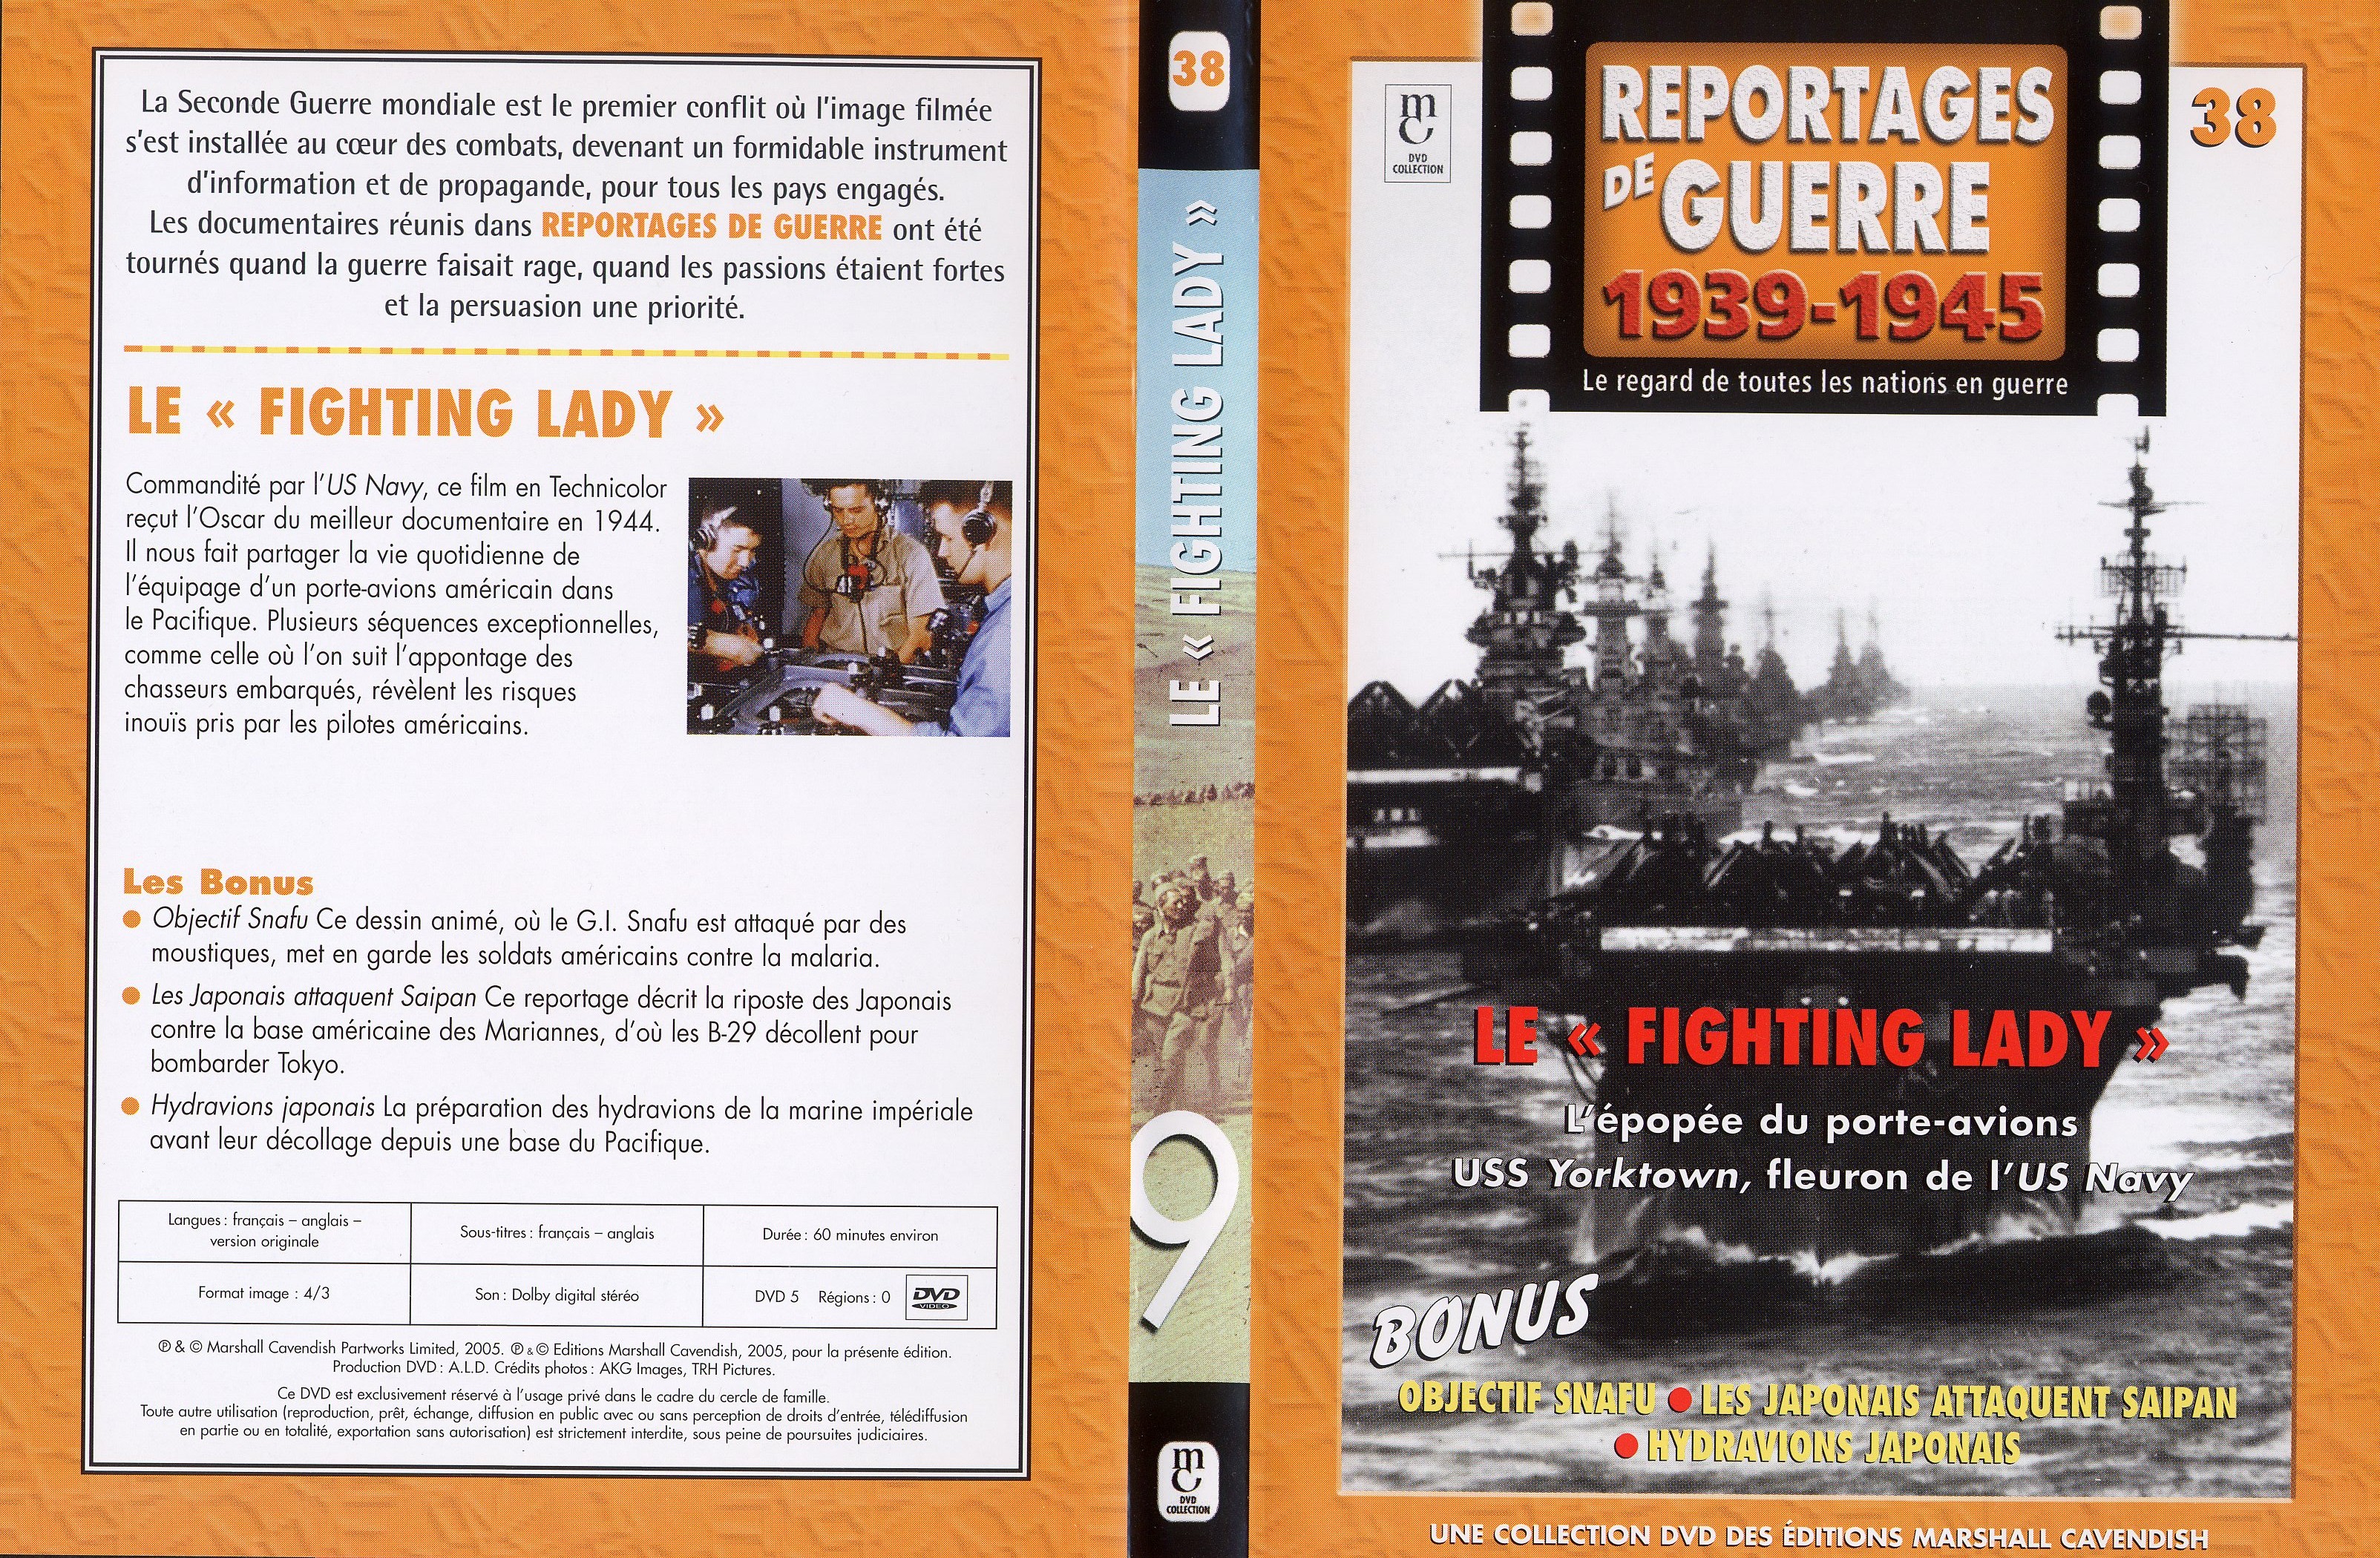 Jaquette DVD Reportages de guerre vol 38